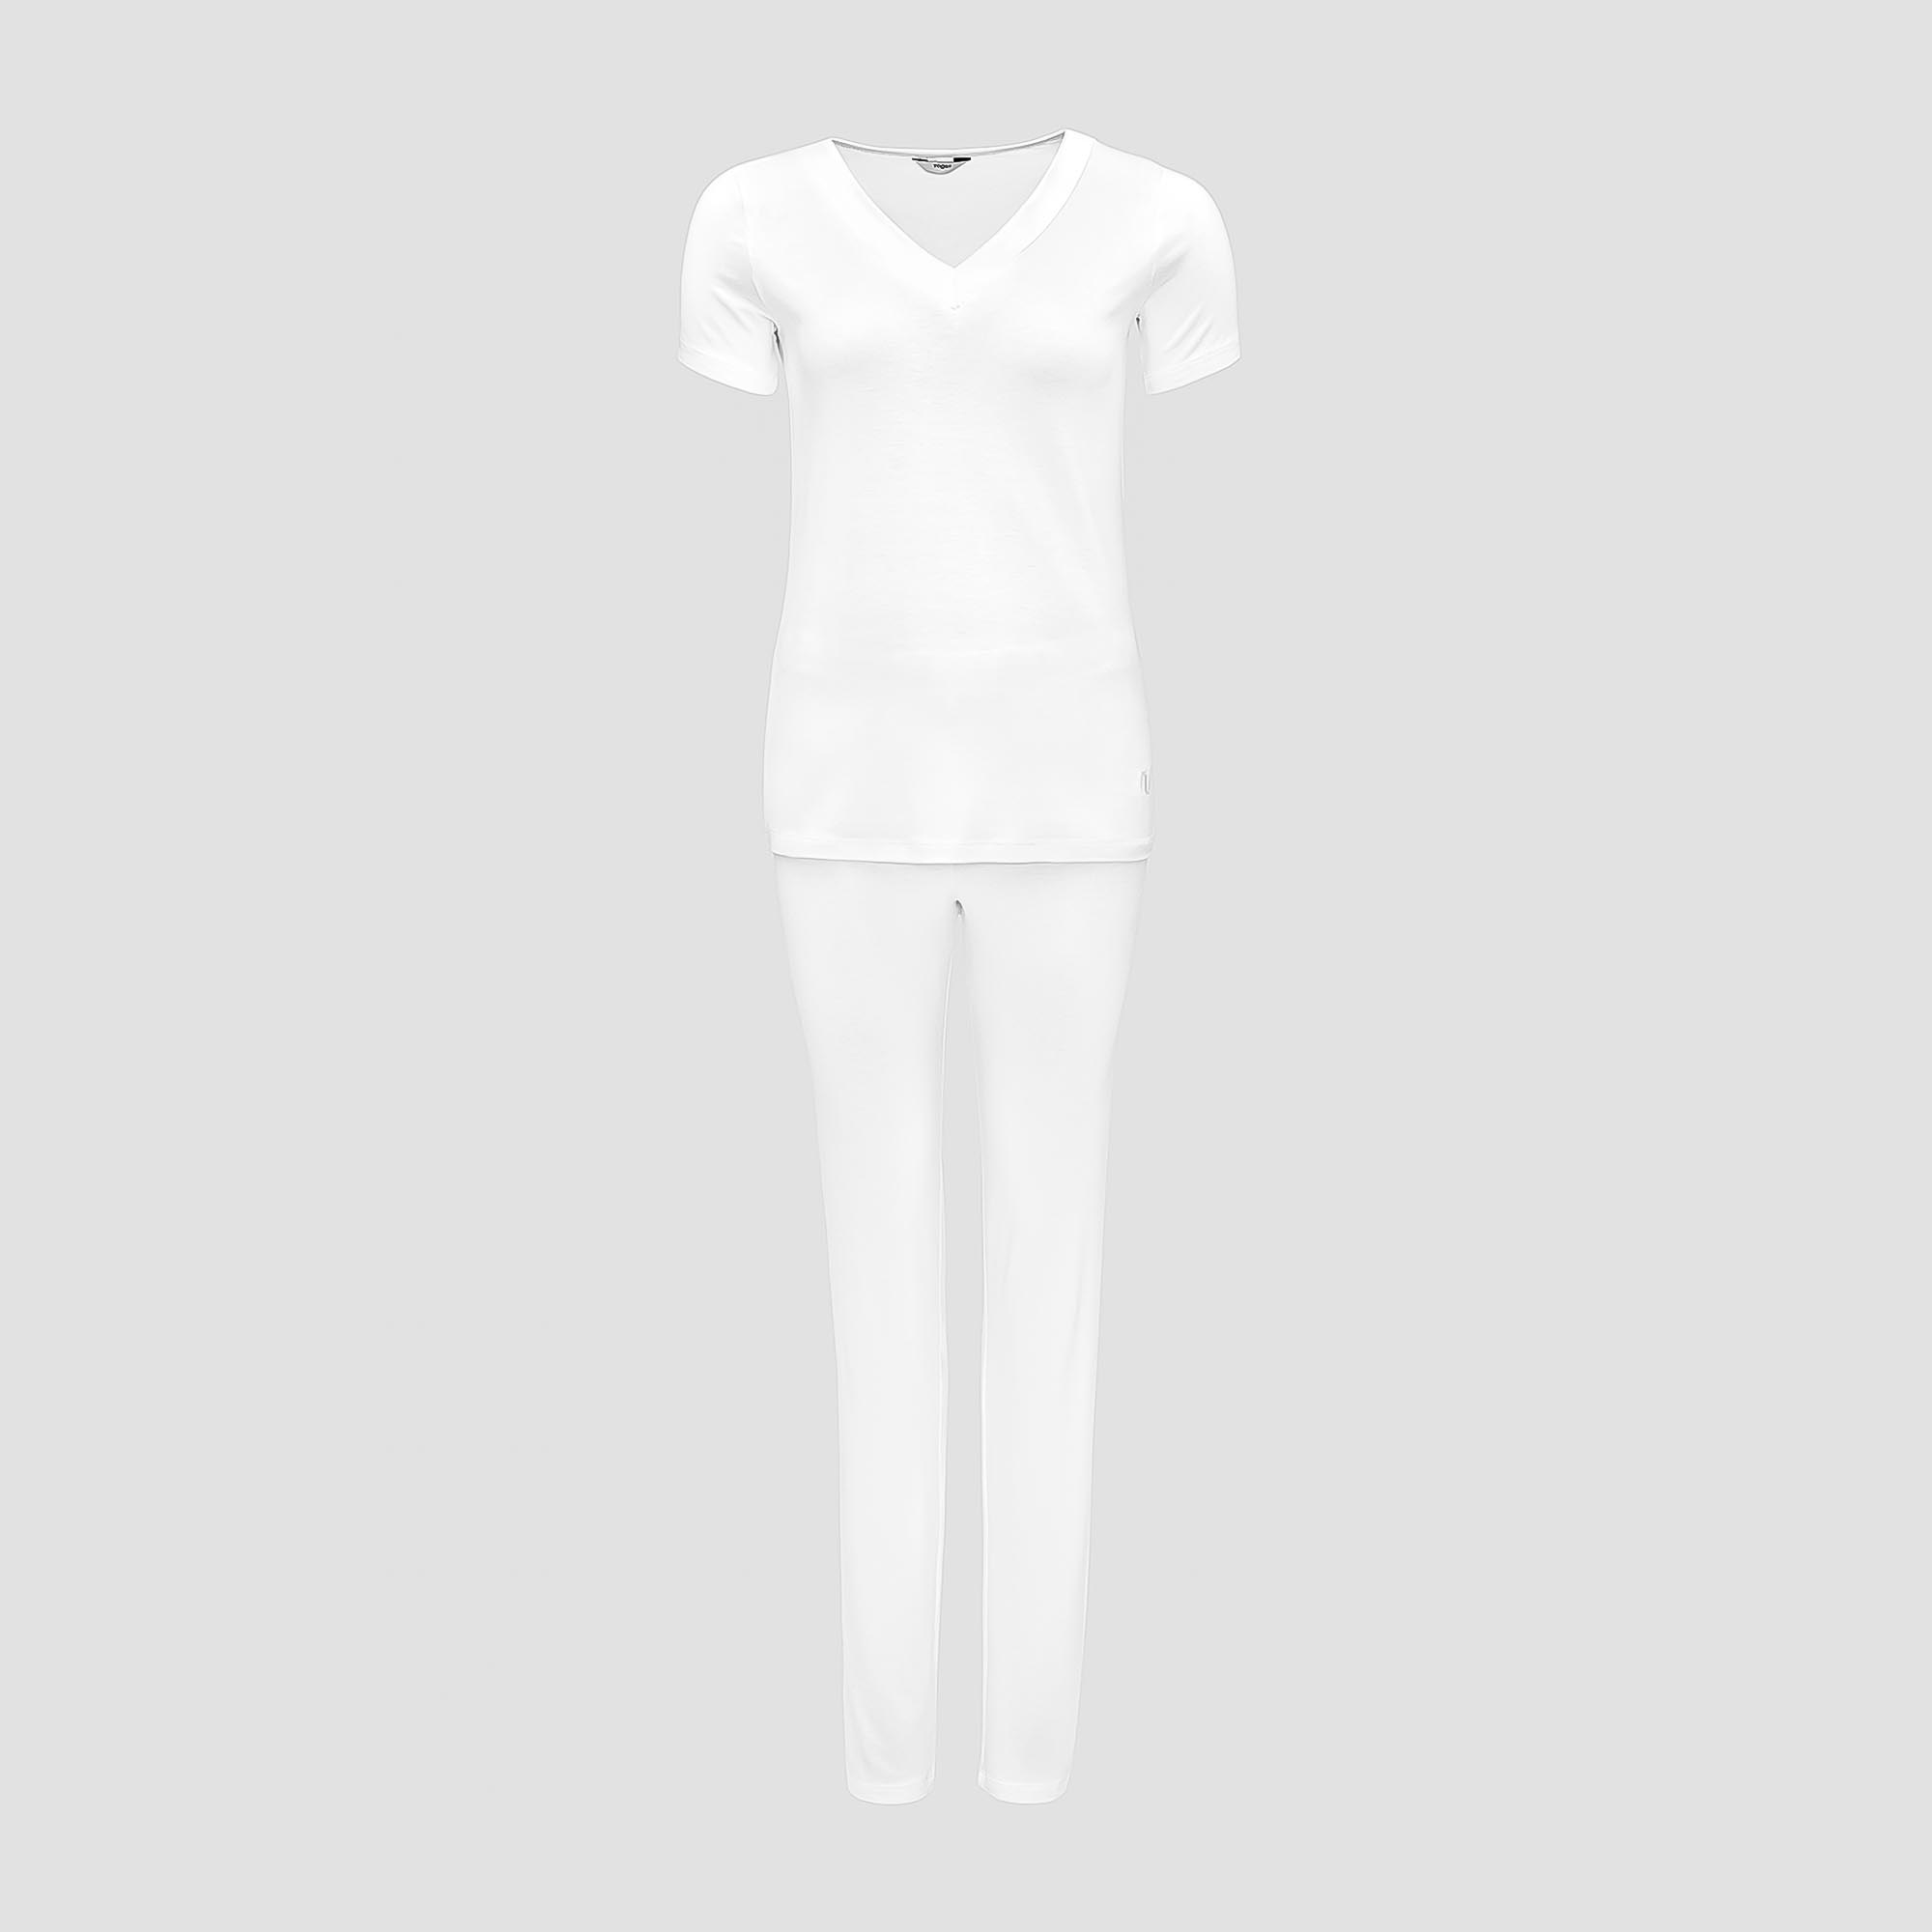 Пижама Togas Ингелла белая женская L(48) 2 предмета пижама togas ингелла белая женская s 44 2 предмета